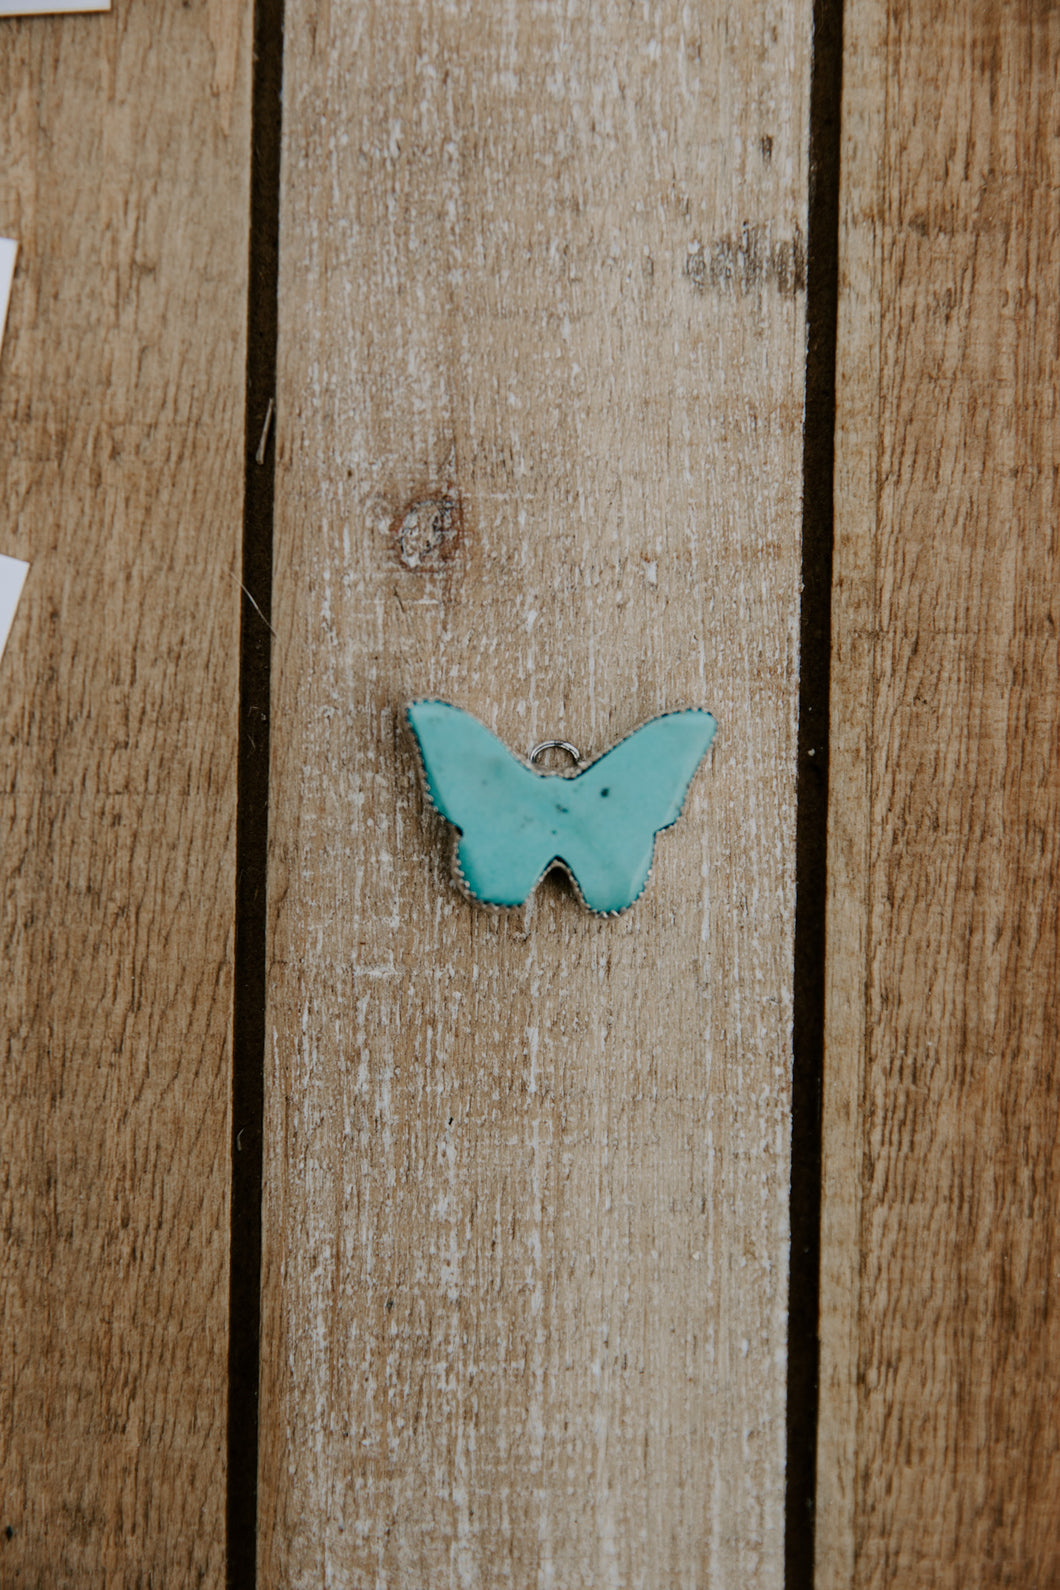 Kingman Butterfly Pendant